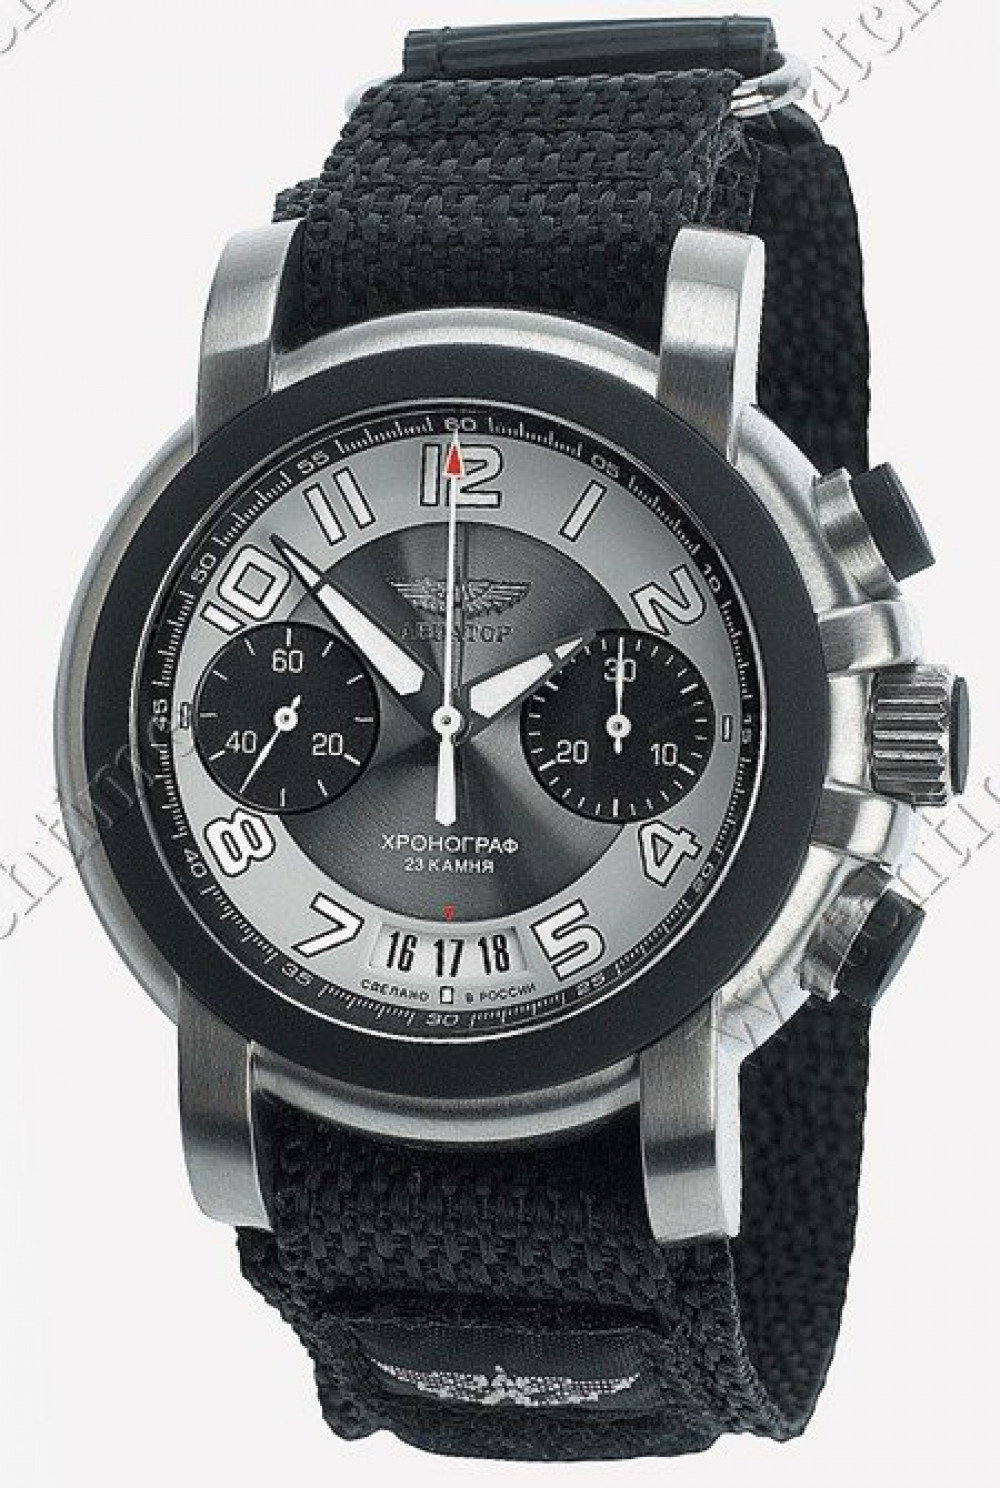 Zegarek firmy Aviator (Volmax/RU/Swiss), model 